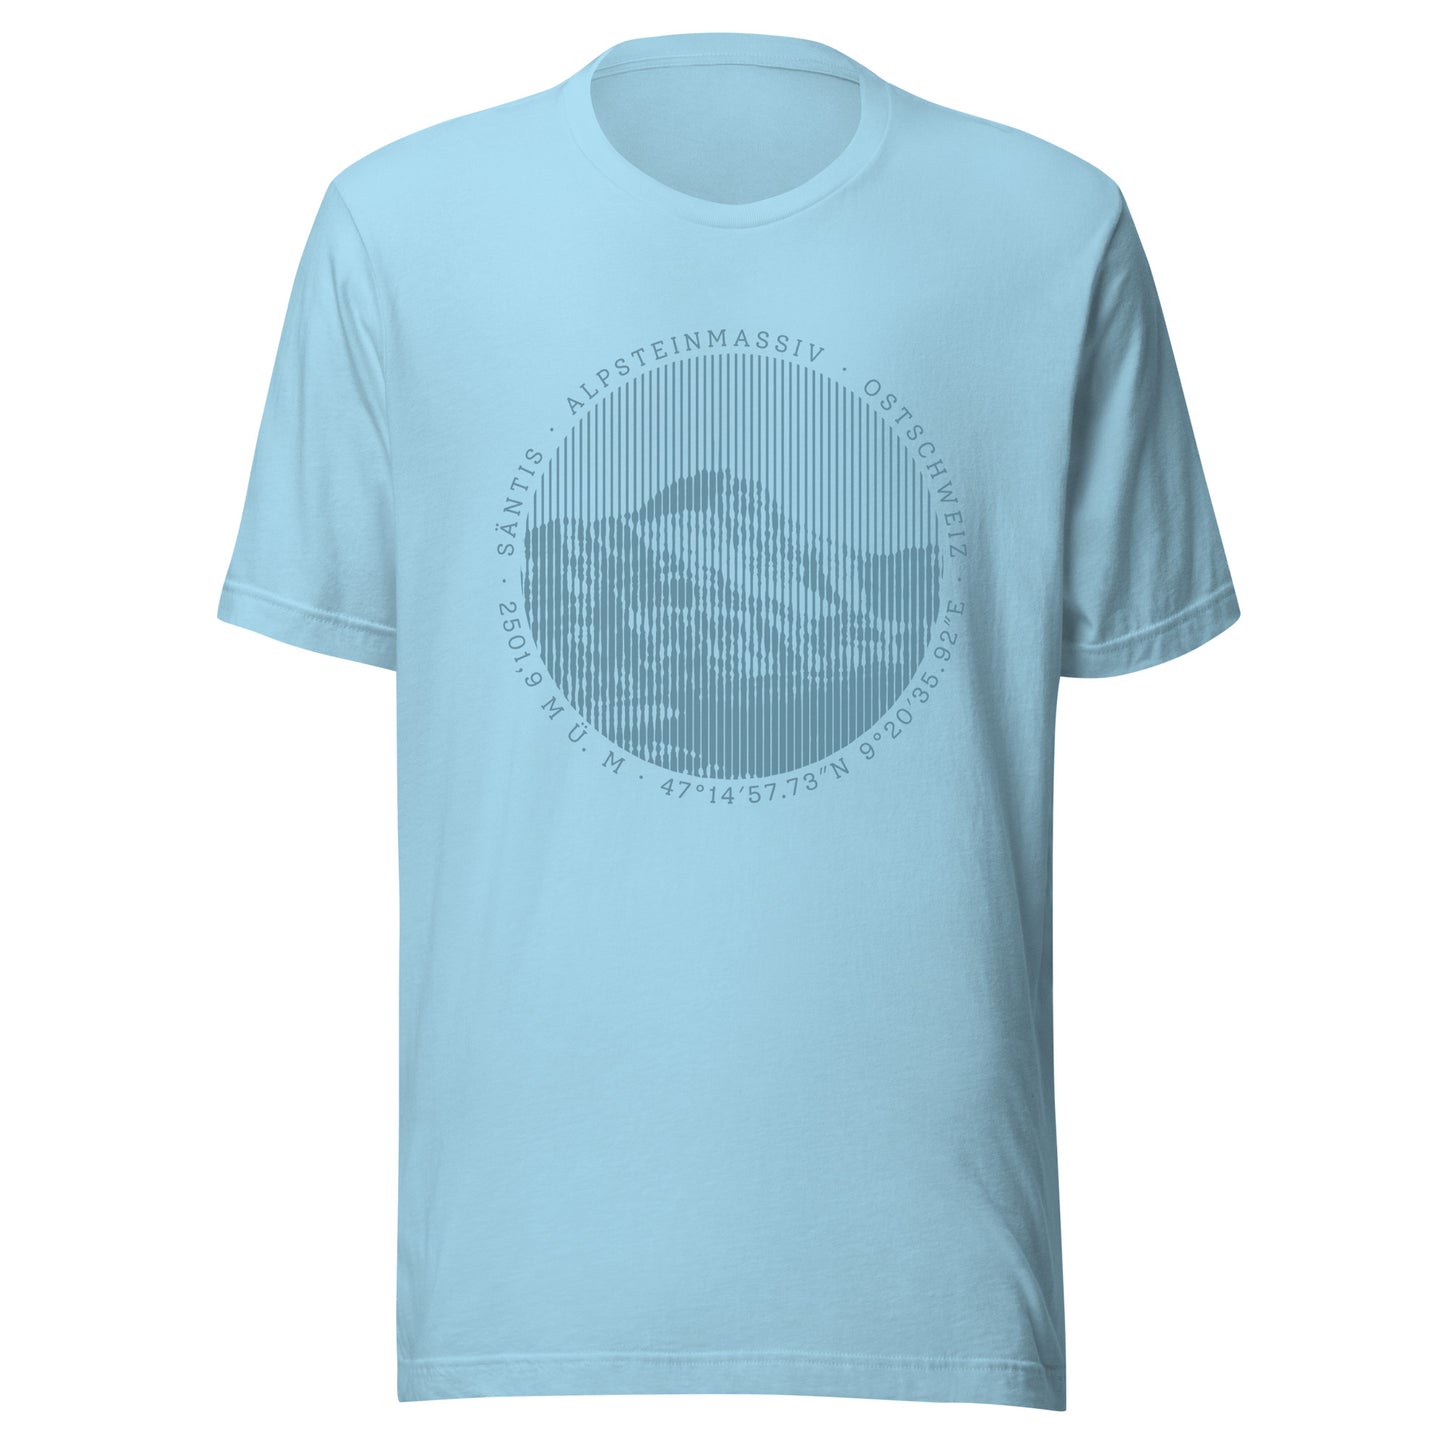 hellblaues Damen T-Shirt. Der Print zeigt den Säntis, einen legendären Berggipfel in den Appenzeller Alpen in der Ostschweiz.